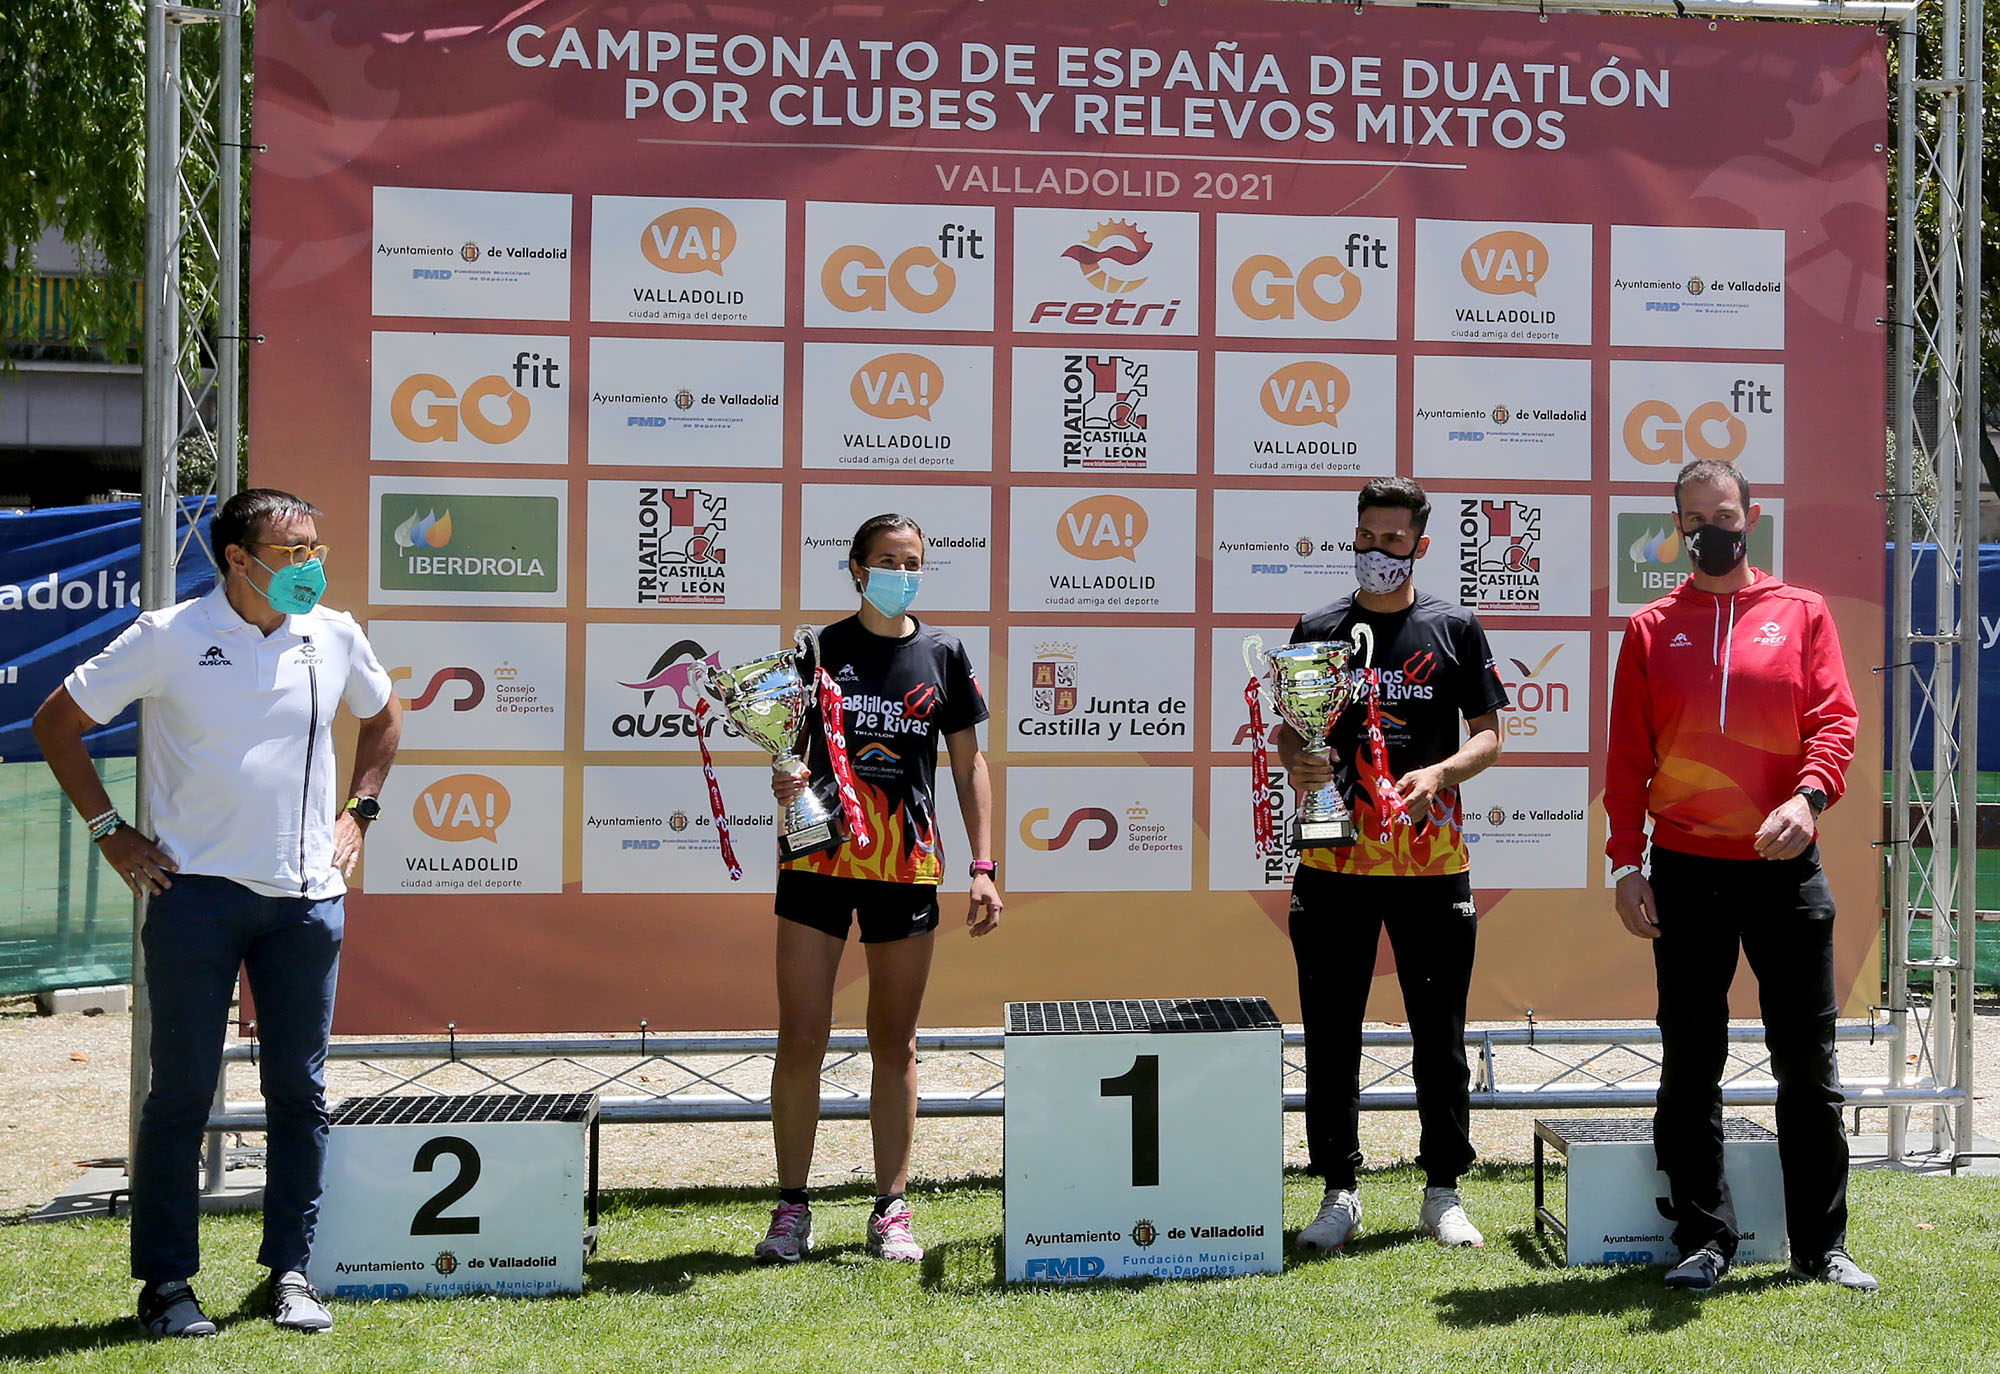 Foto de la instalación Campeonato de España de Duatlón